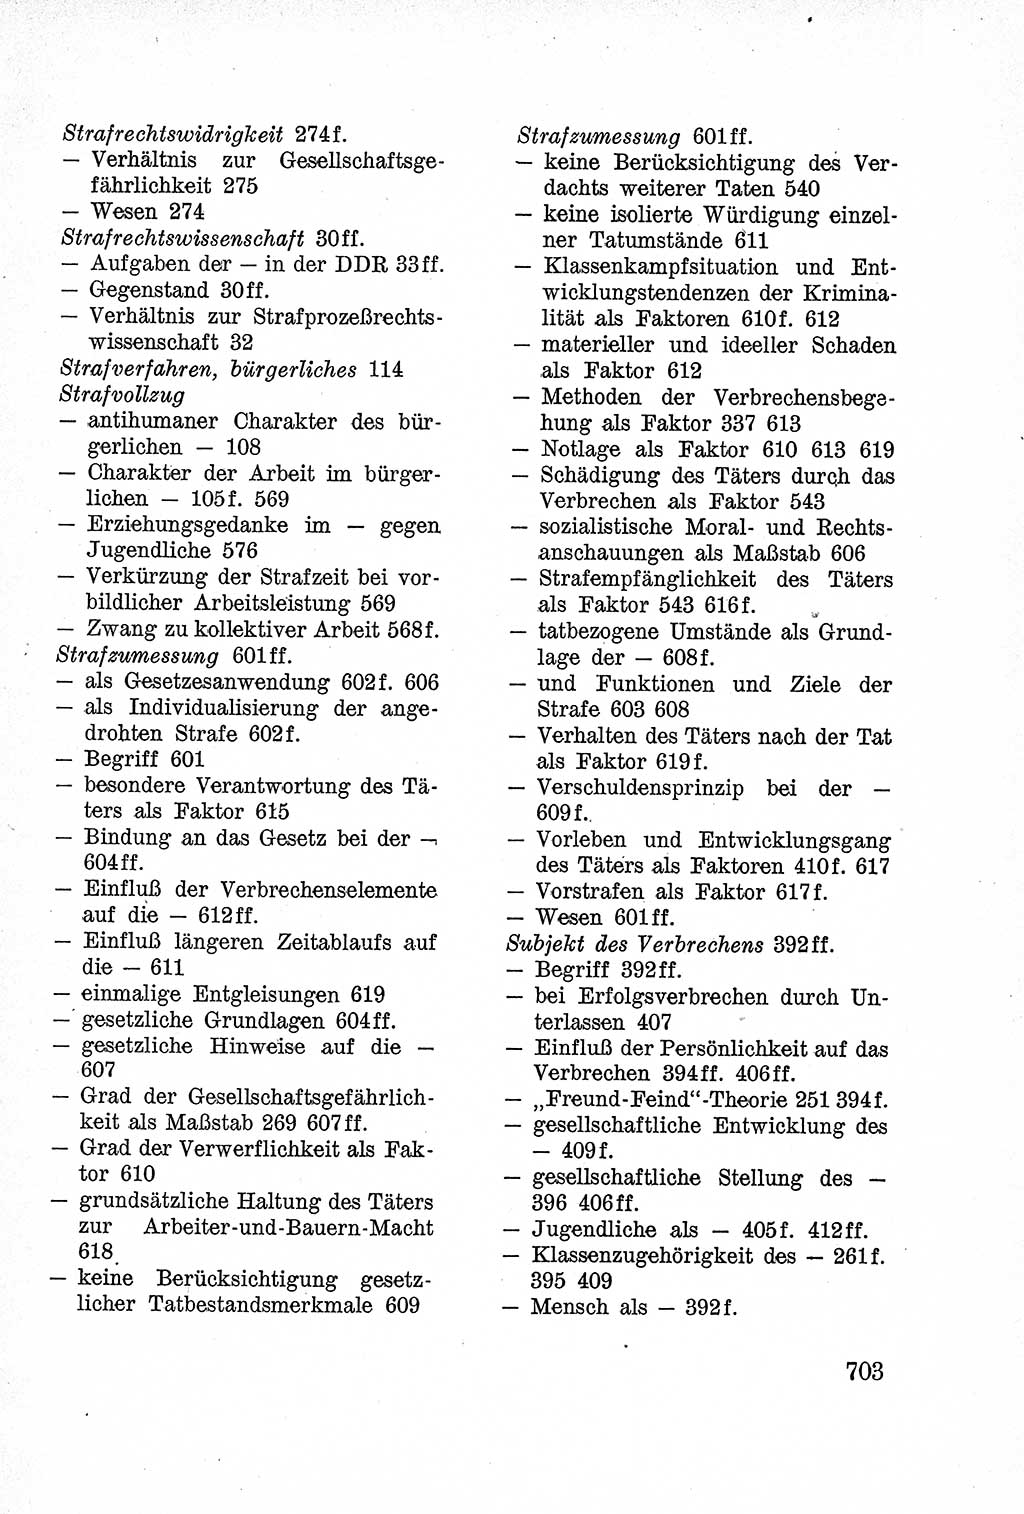 Lehrbuch des Strafrechts der Deutschen Demokratischen Republik (DDR), Allgemeiner Teil 1957, Seite 703 (Lb. Strafr. DDR AT 1957, S. 703)